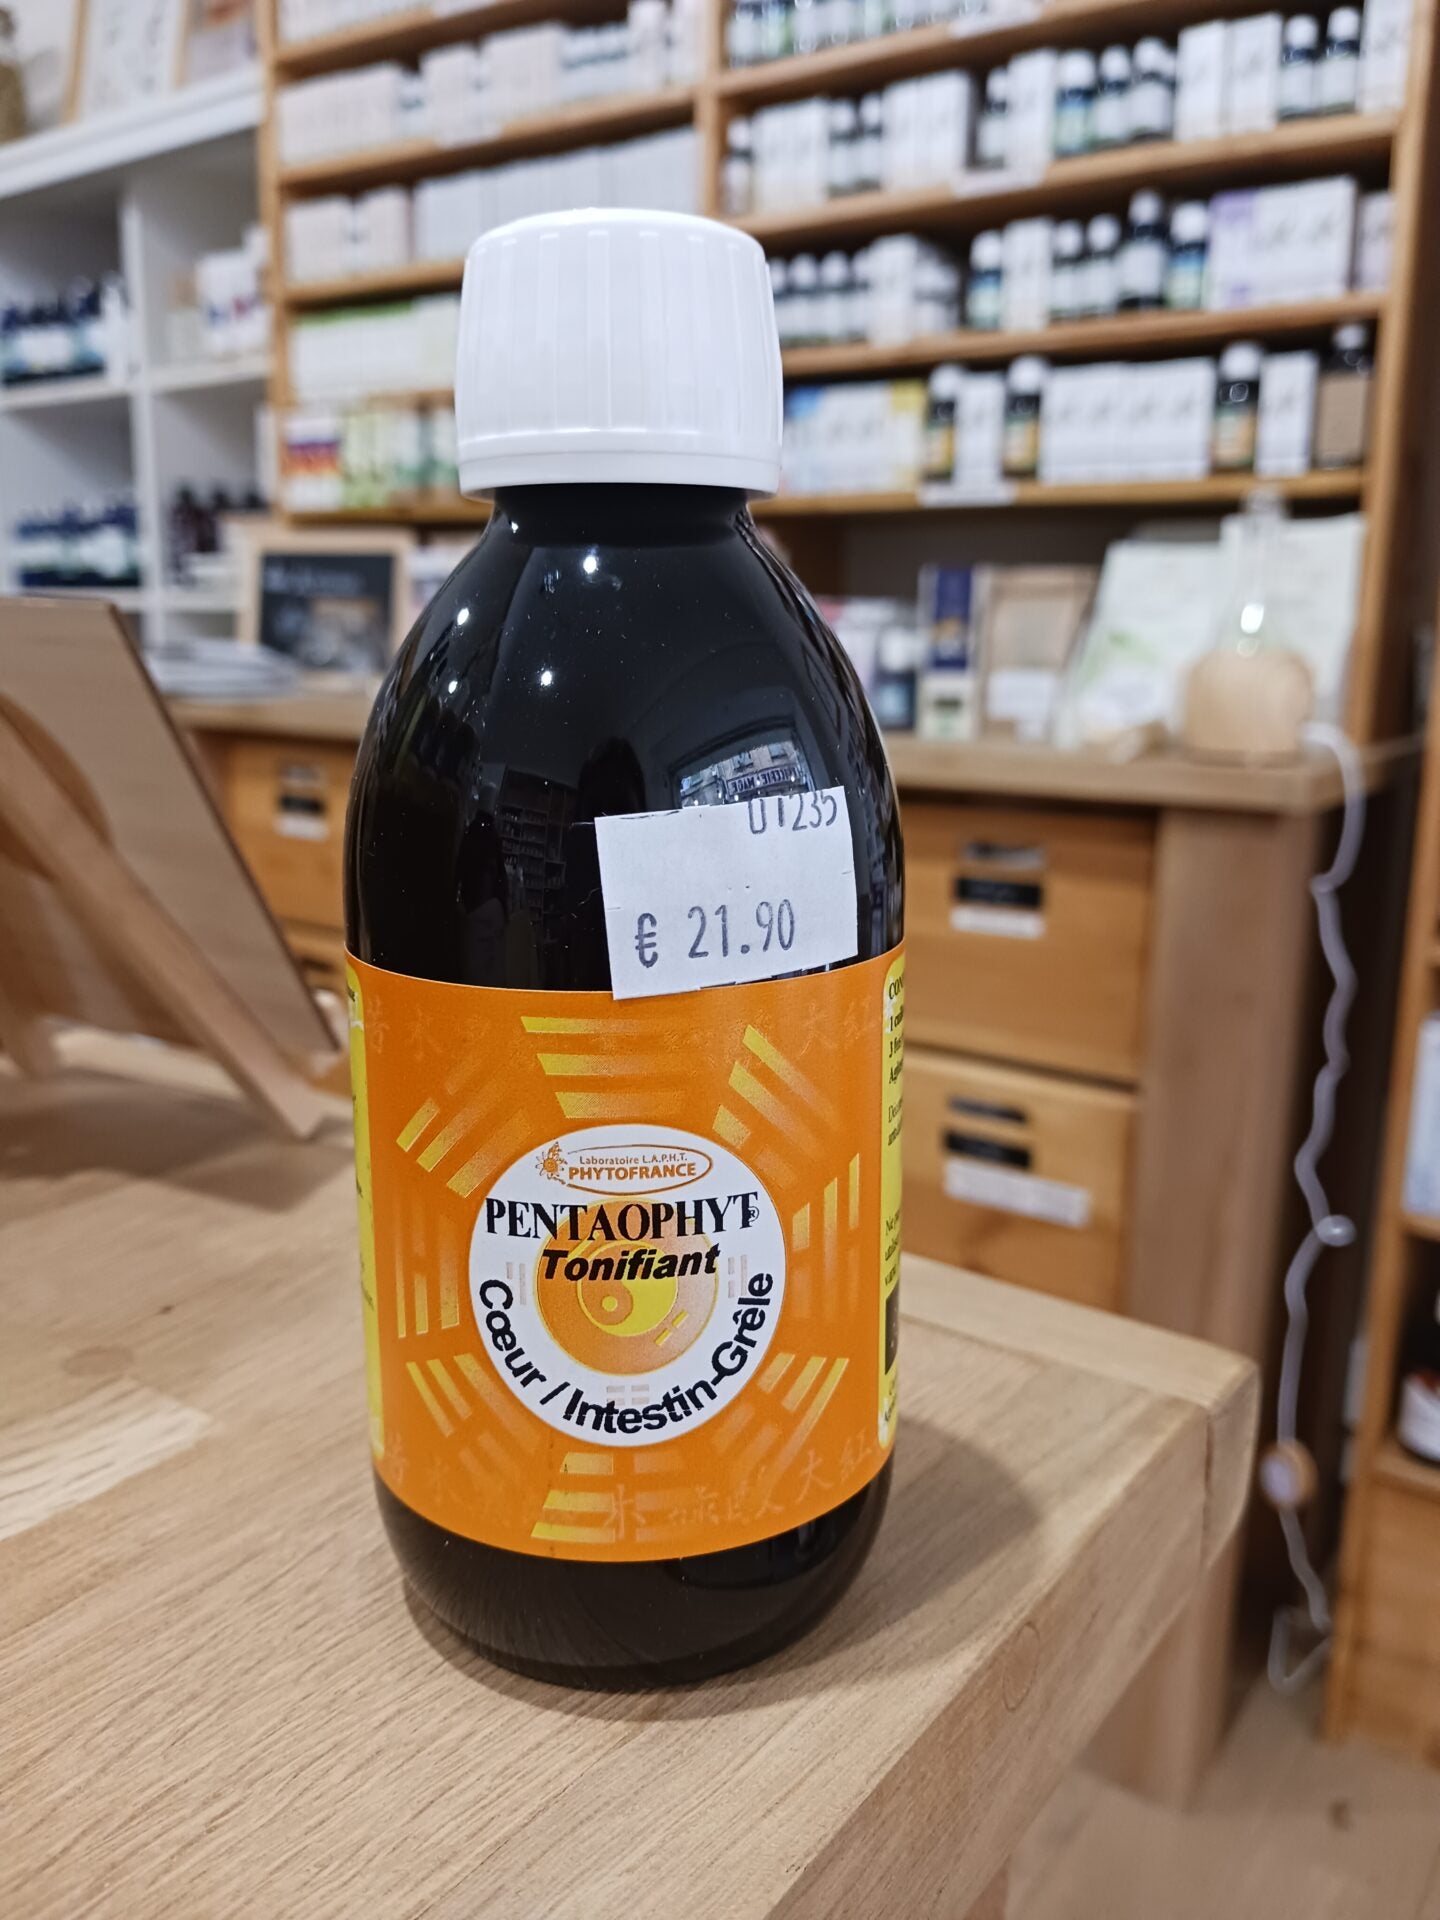 Pentaophyt Tonifiant - Coeur / Intestin grêle